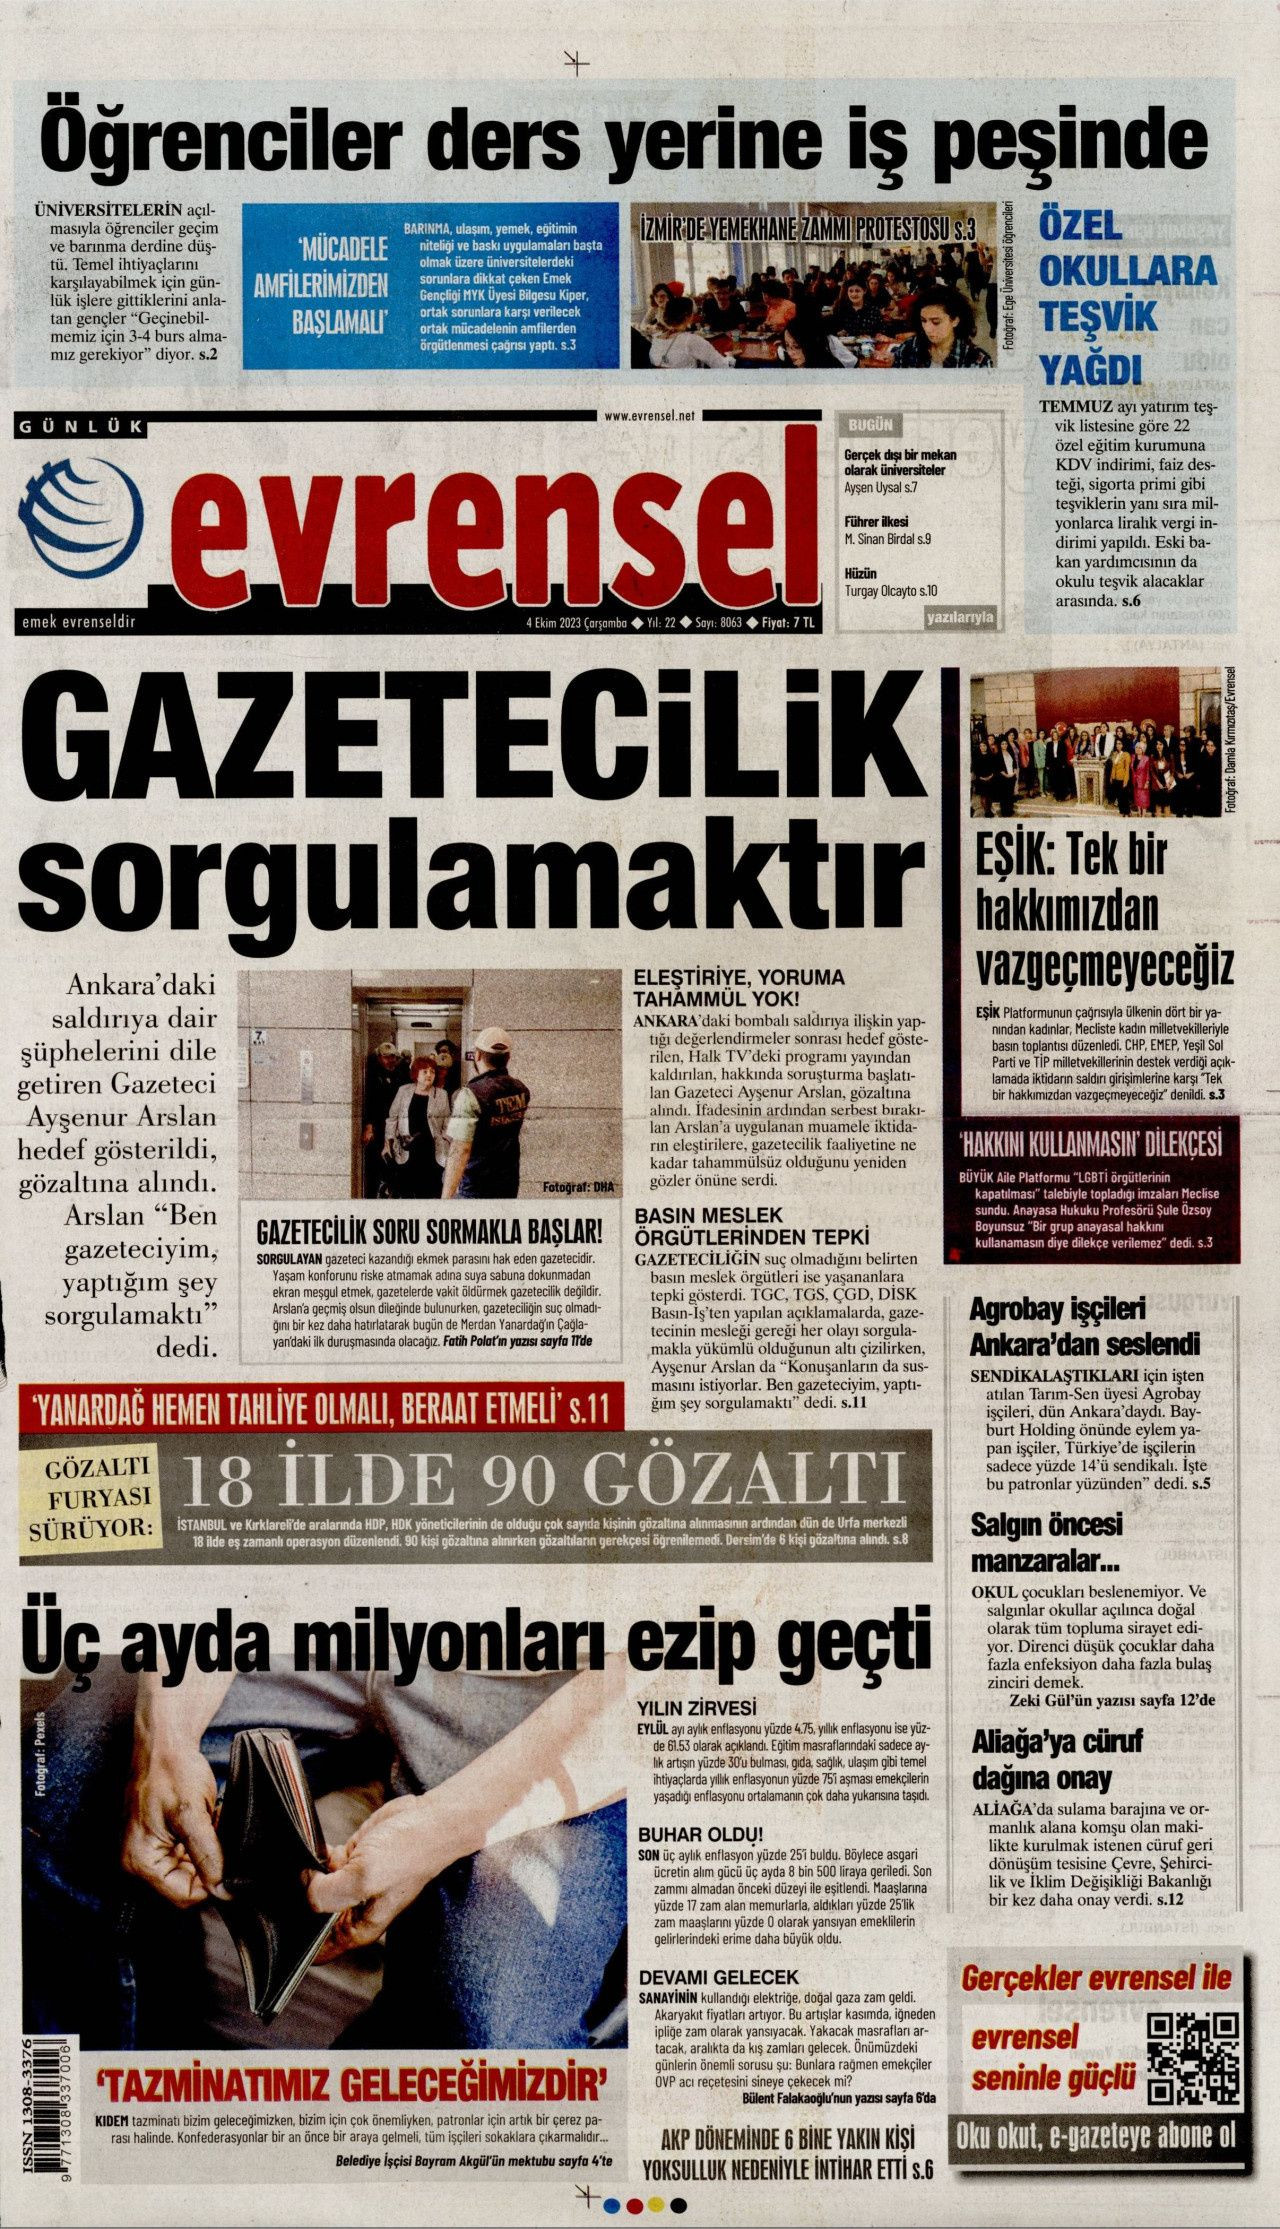 Günün manşetleri: Gazetecilik sorgulamaktır - Sayfa 1